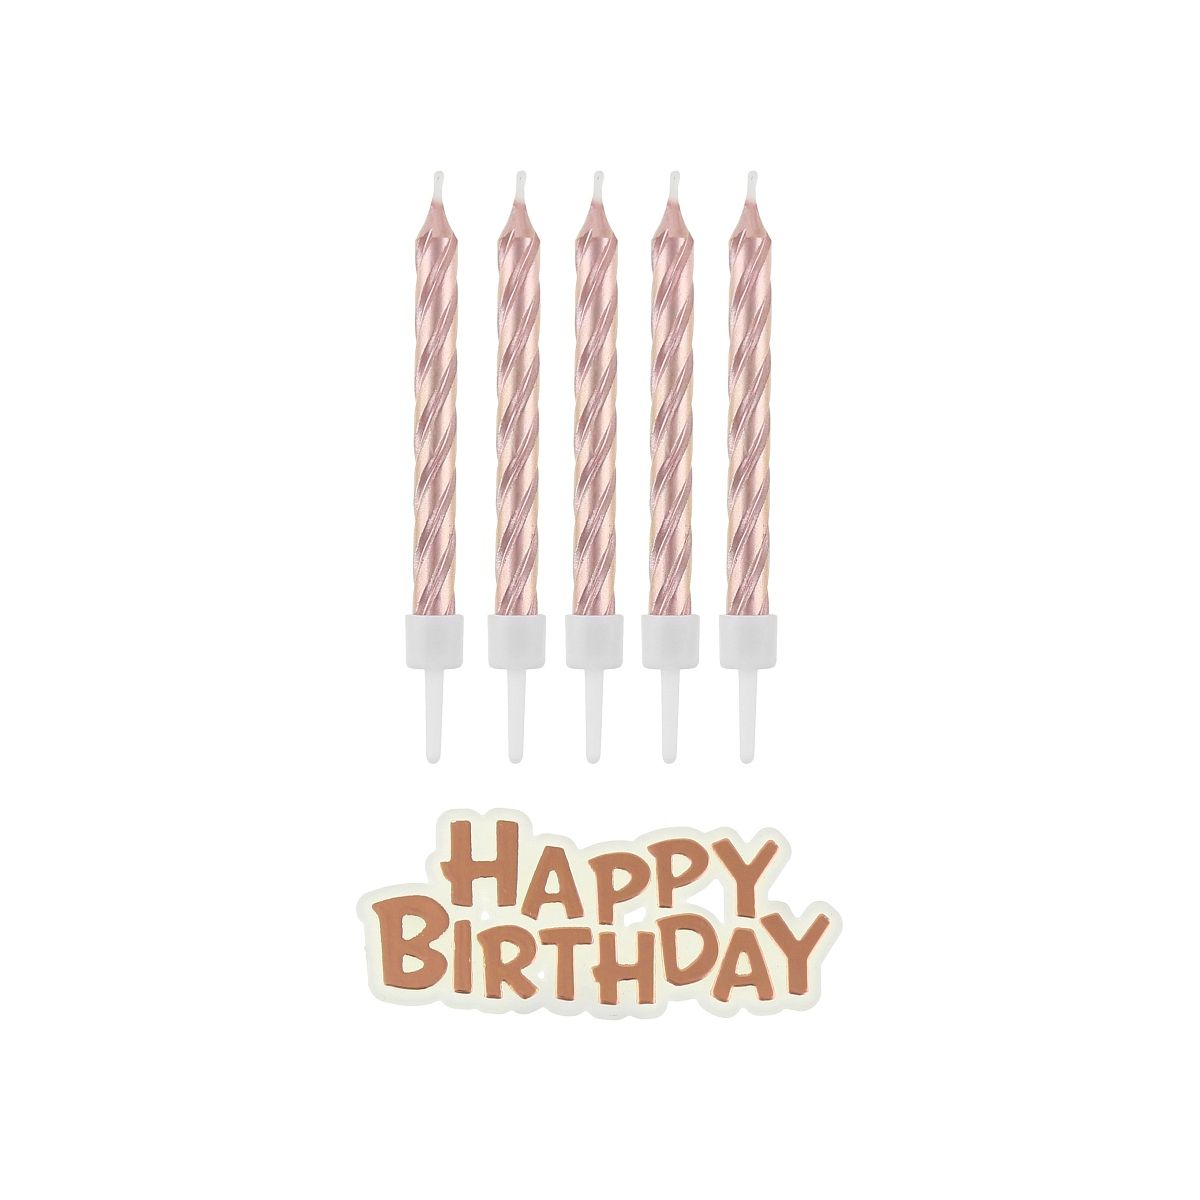 Świeczka urodzinowa Happy Birthday metaliczne różowo-złote 16 sztuk Godan (SF-SUHB)